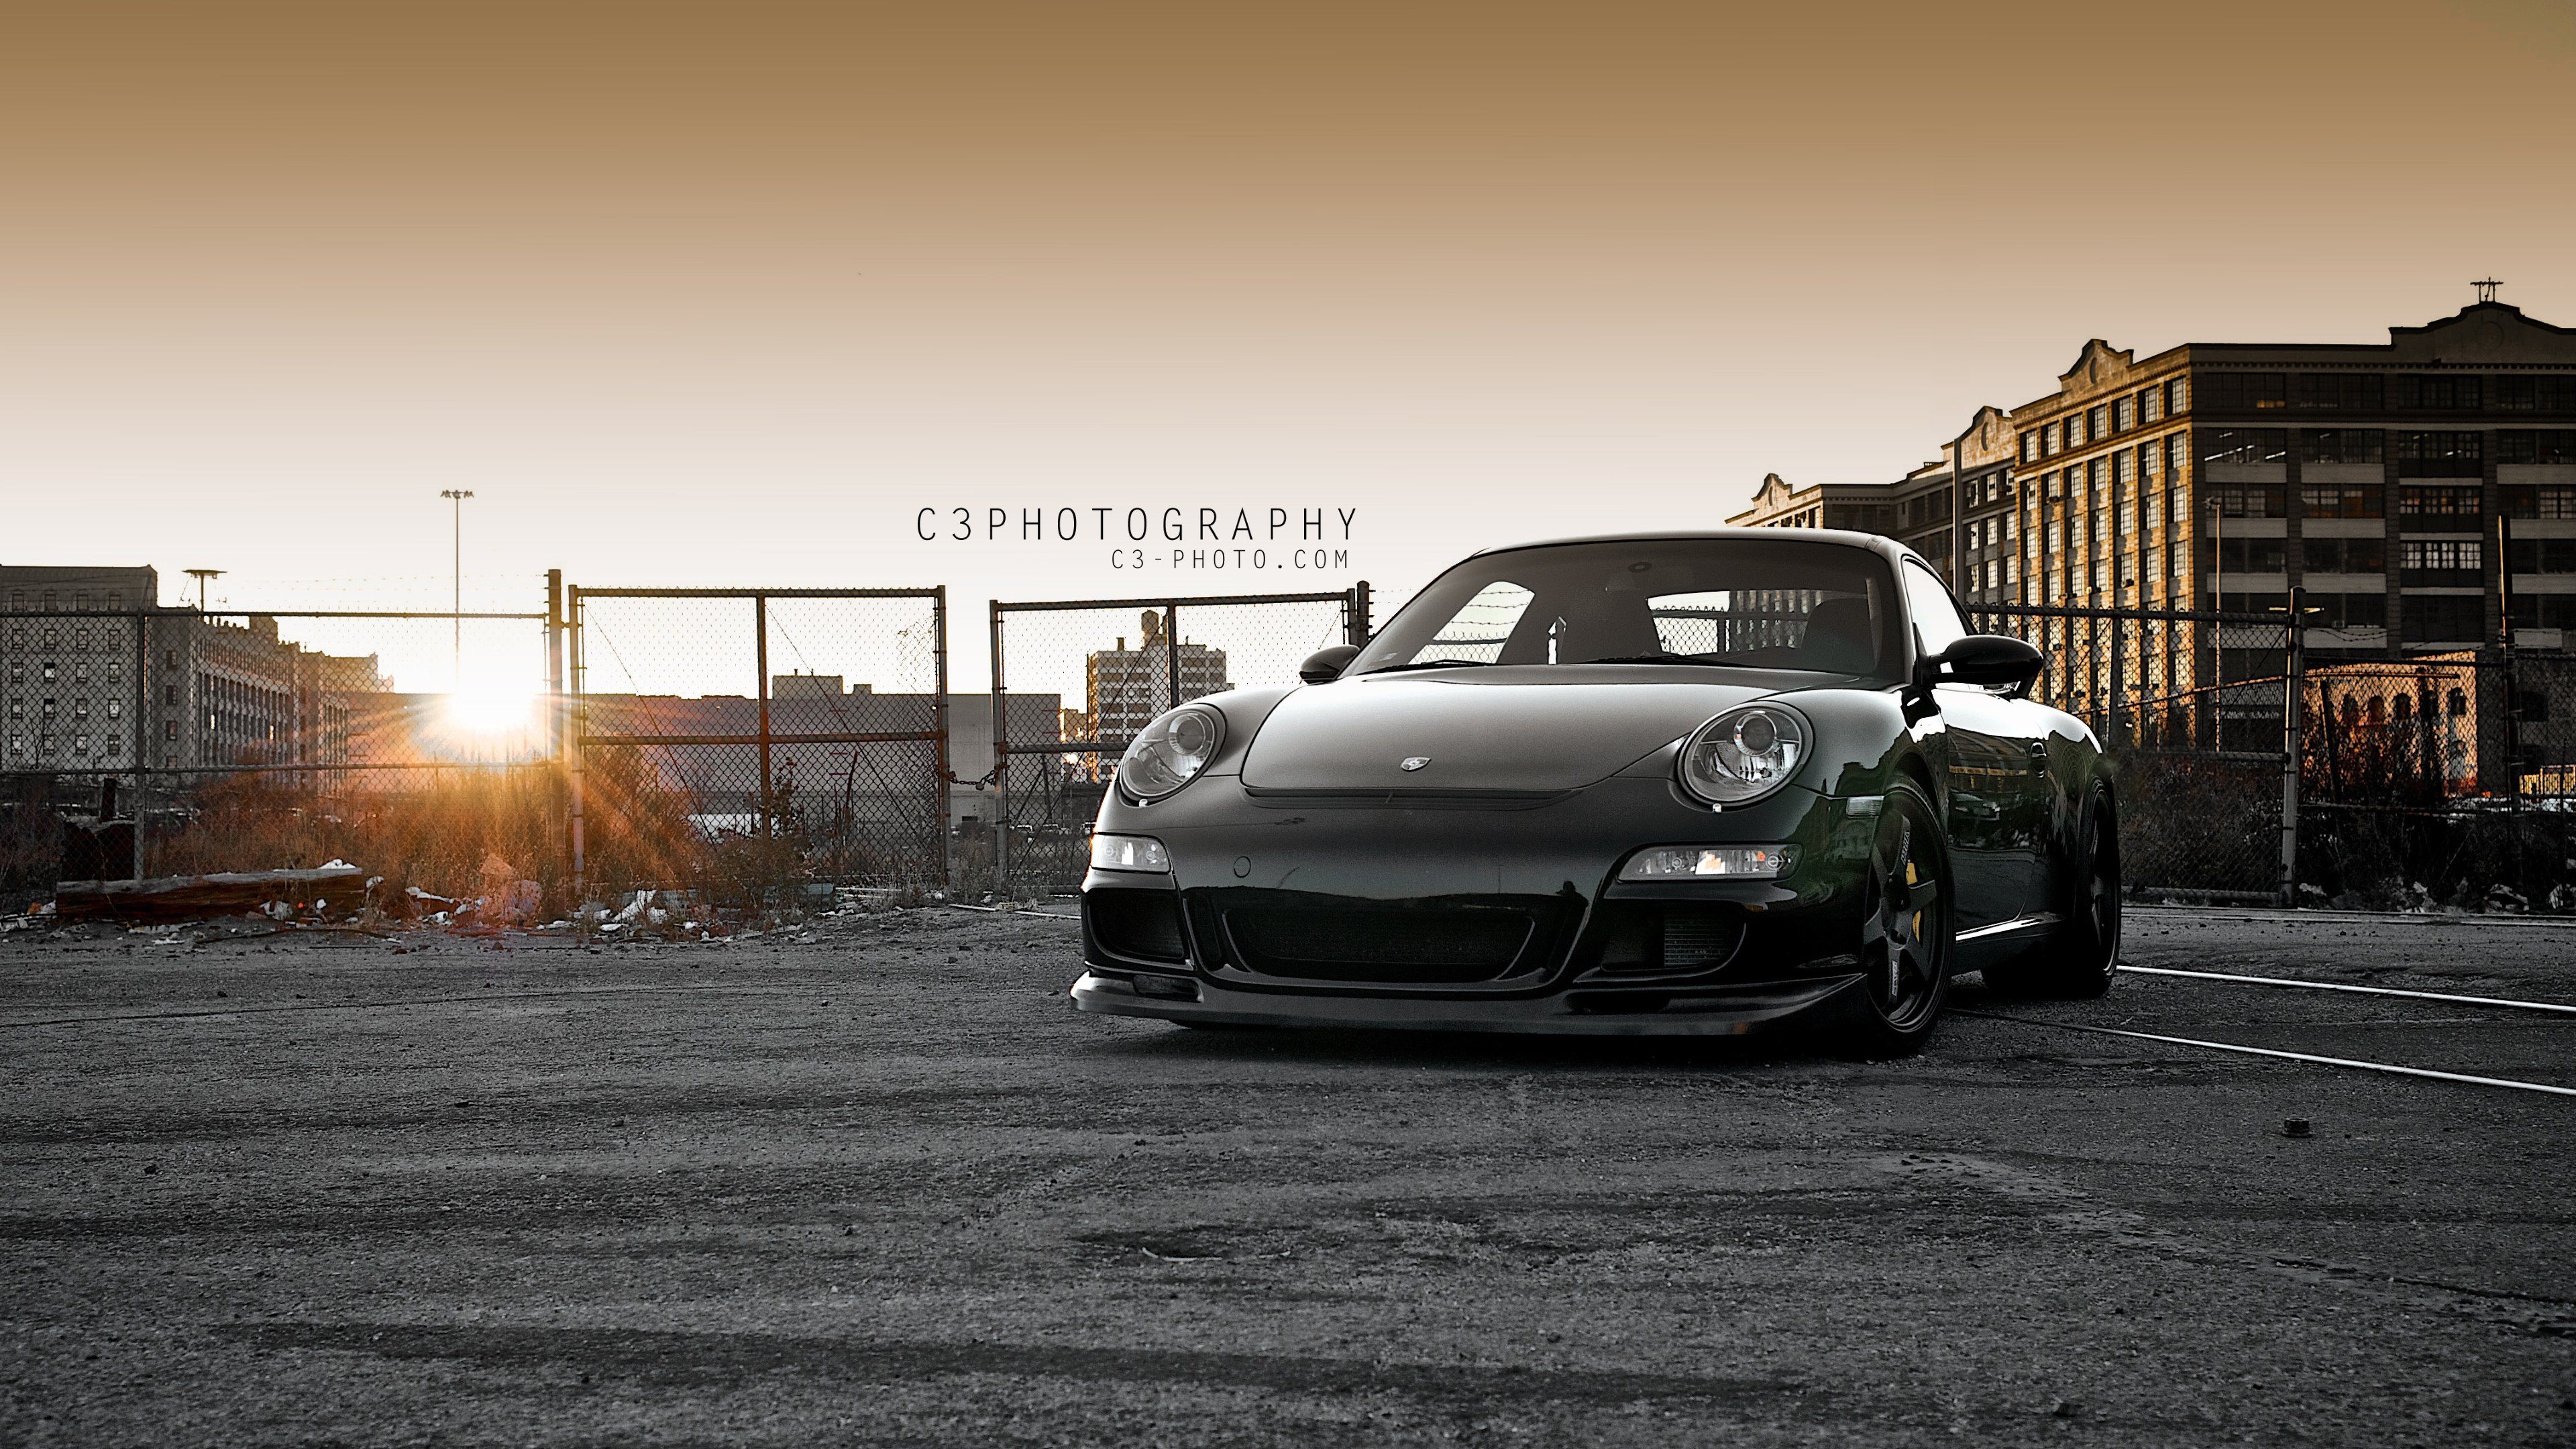 Porsche 911 ultra hd wallpapers - Ultra High Definition Wallpapers